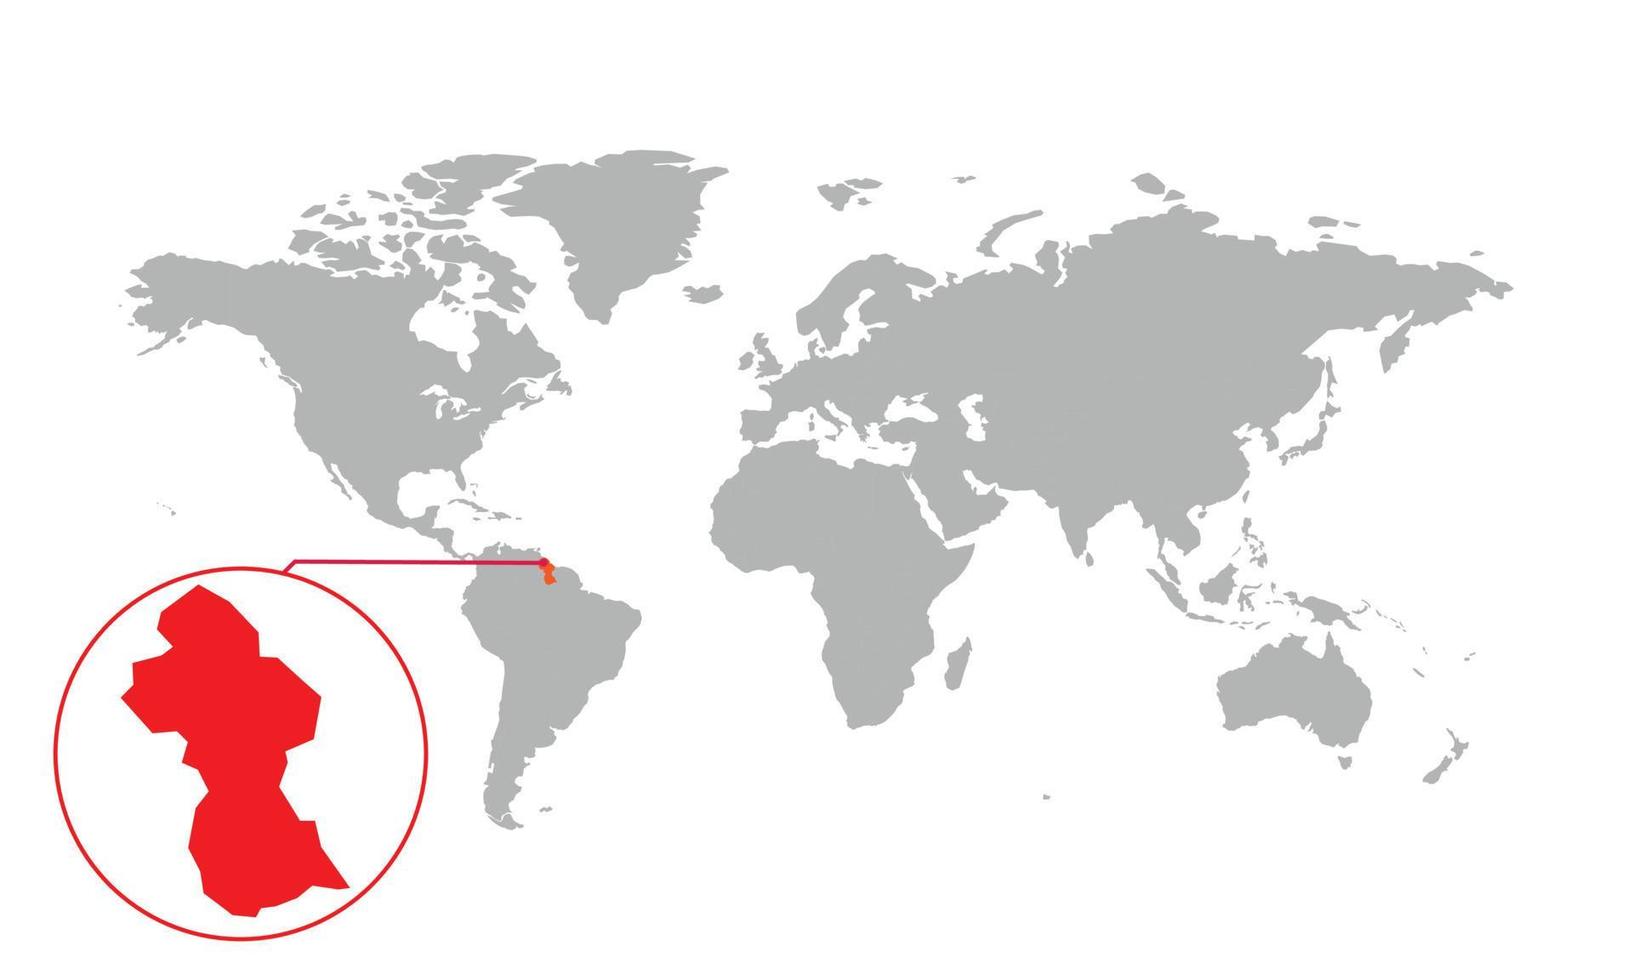 messa a fuoco della mappa della Guyana. mappa del mondo isolata. isolato su sfondo bianco. illustrazione vettoriale. vettore